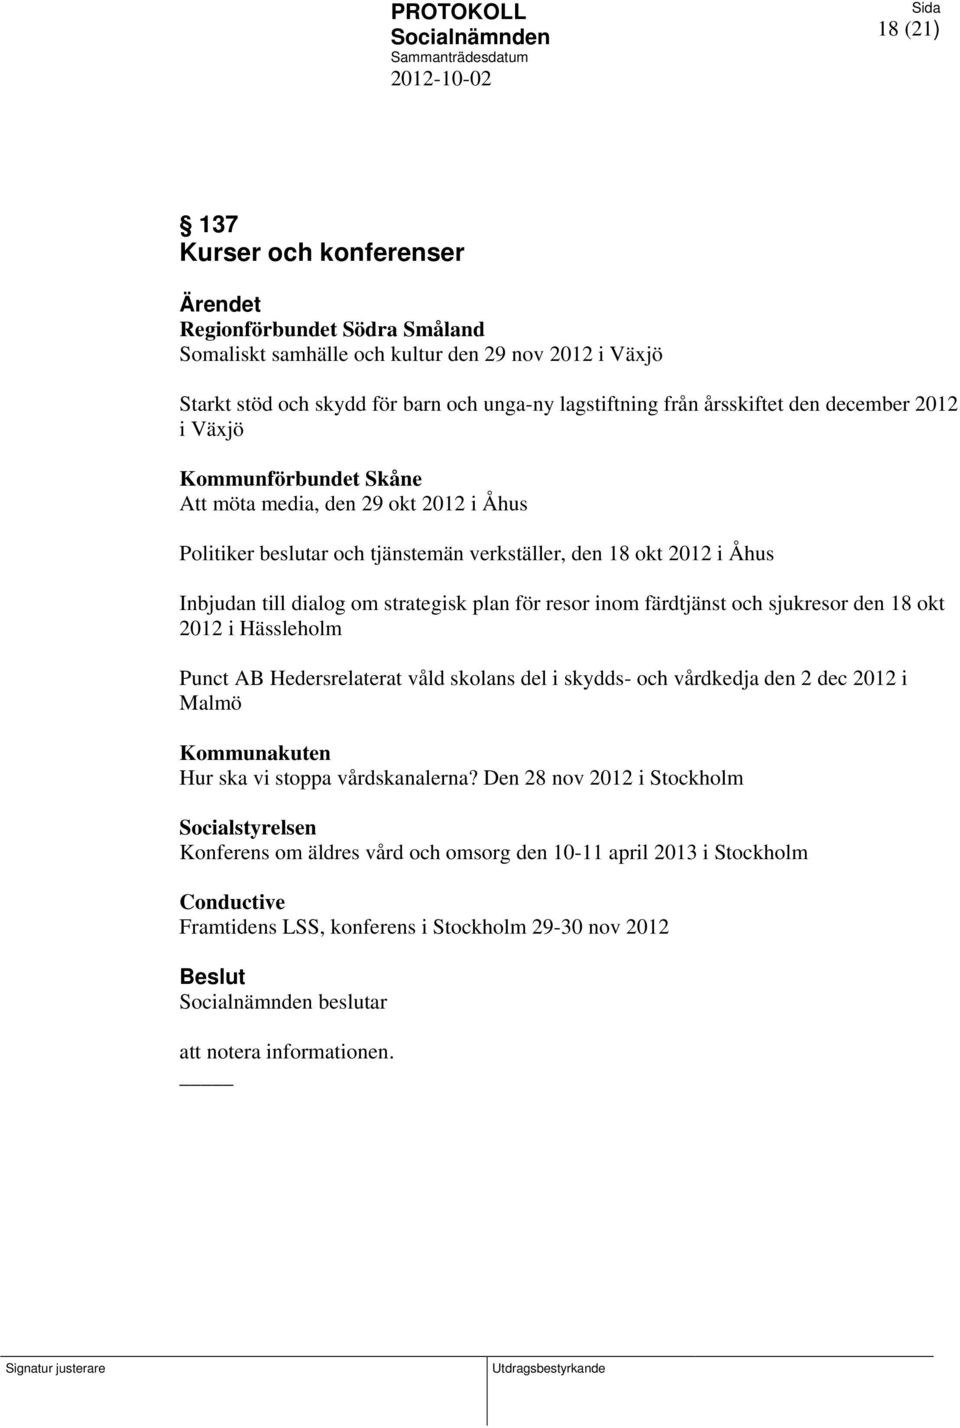 resor inom färdtjänst och sjukresor den 18 okt 2012 i Hässleholm Punct AB Hedersrelaterat våld skolans del i skydds- och vårdkedja den 2 dec 2012 i Malmö Kommunakuten Hur ska vi stoppa vårdskanalerna?